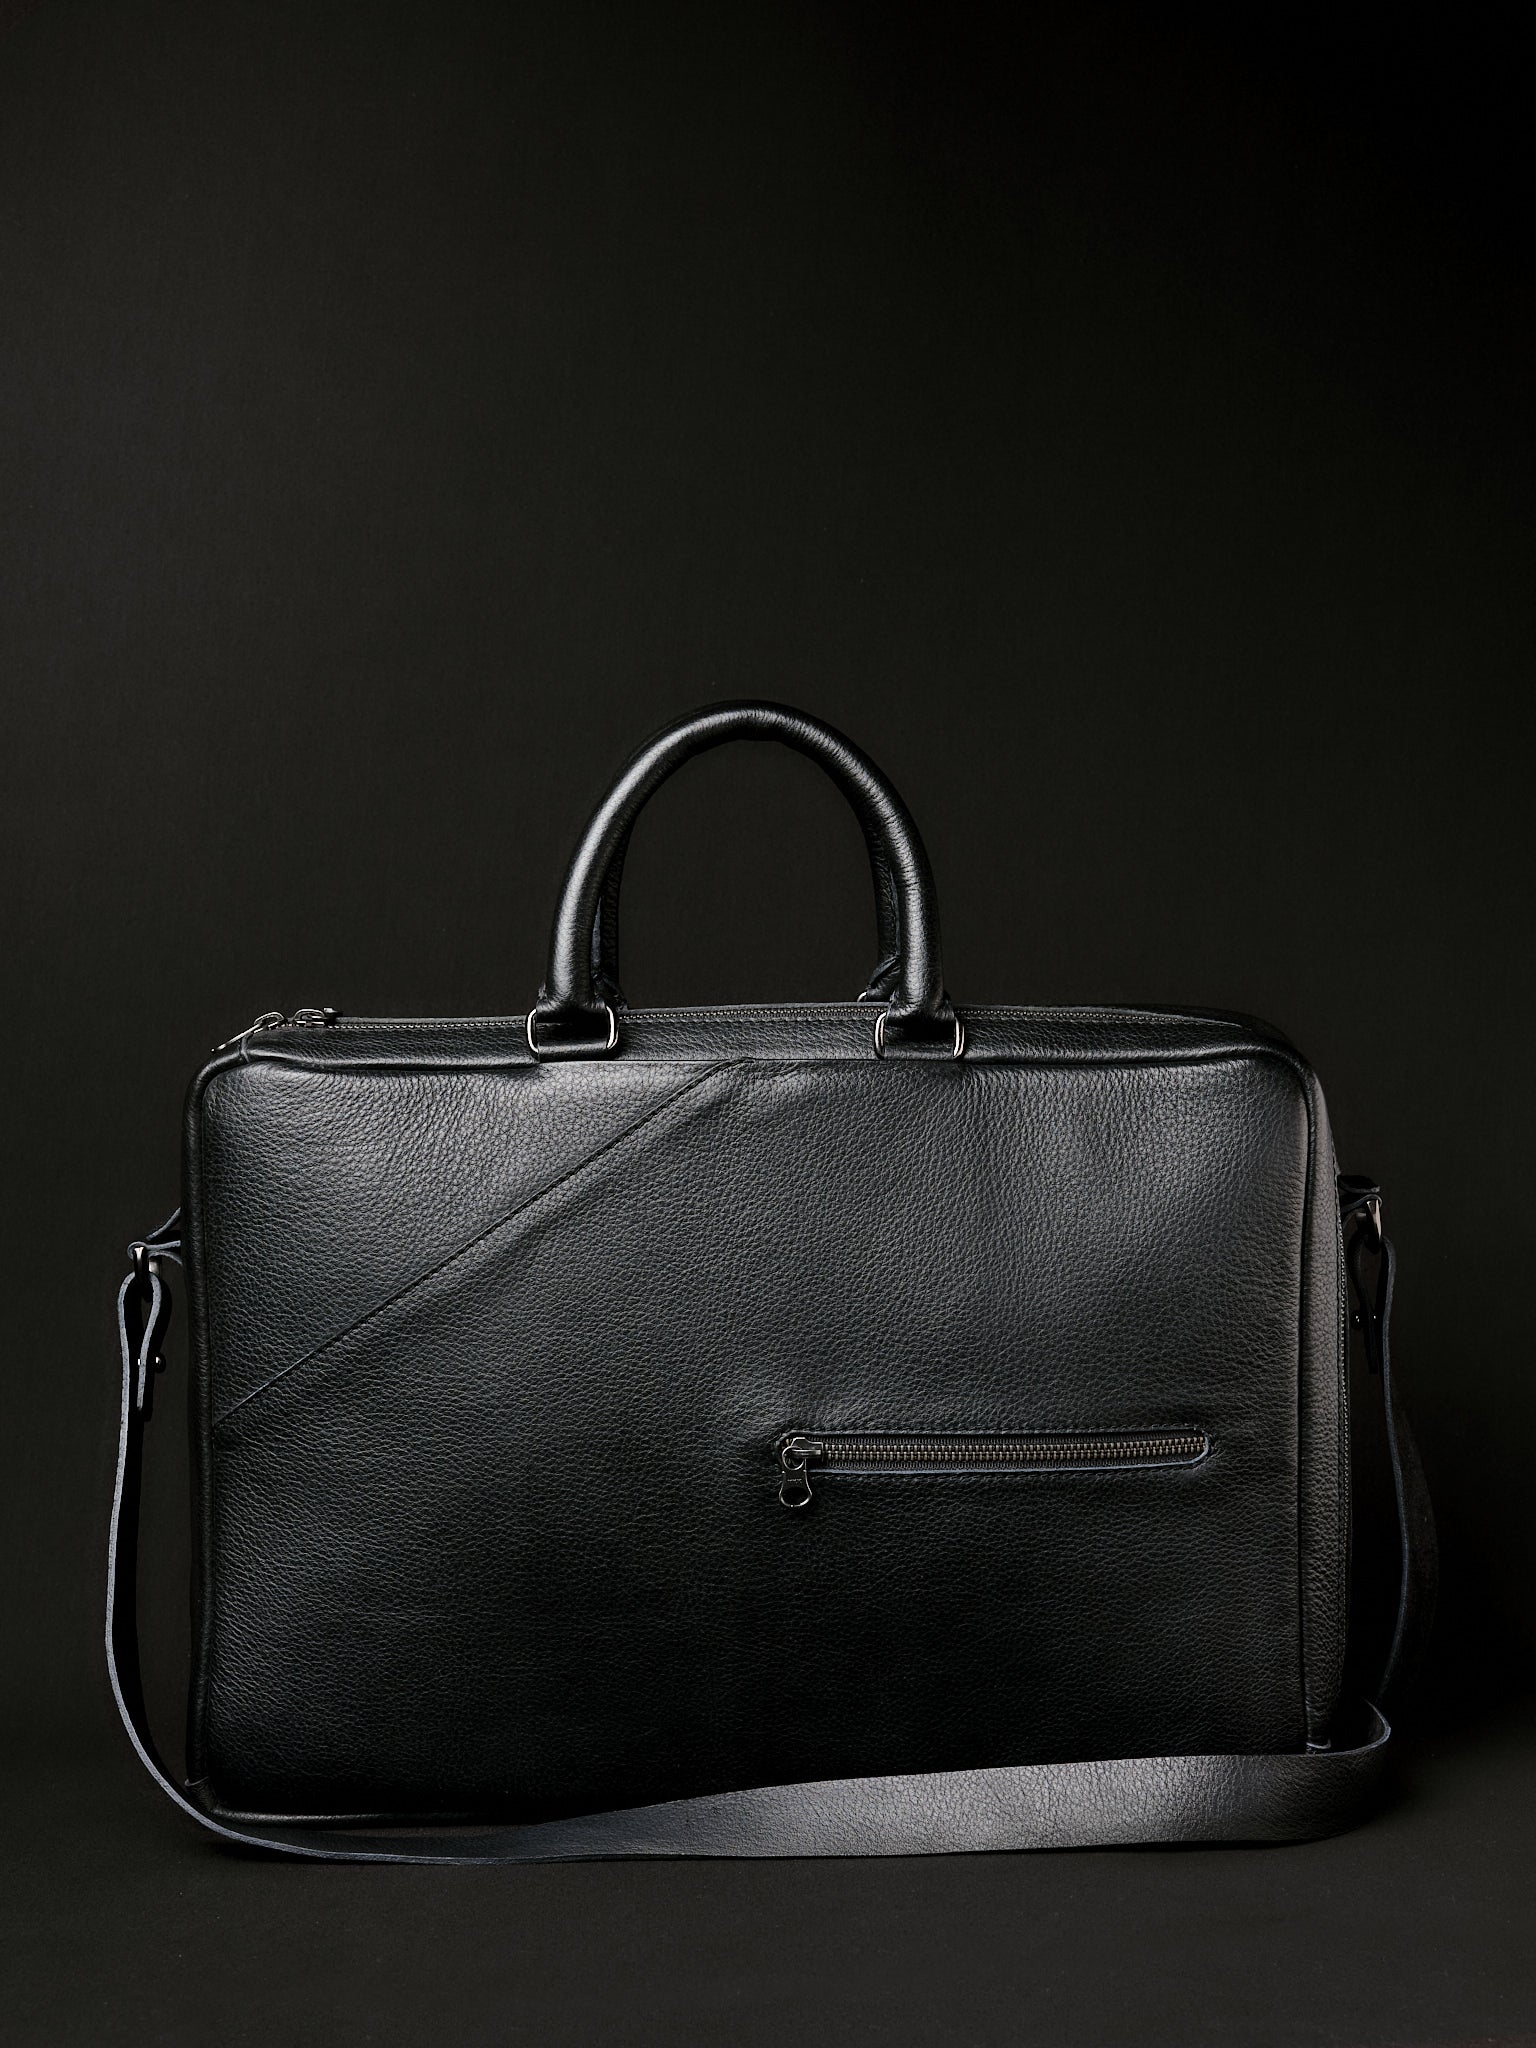 Leather Briefcase for Men. Shoulder Bag. Bbackpack Briefcase Black by Capra Leather